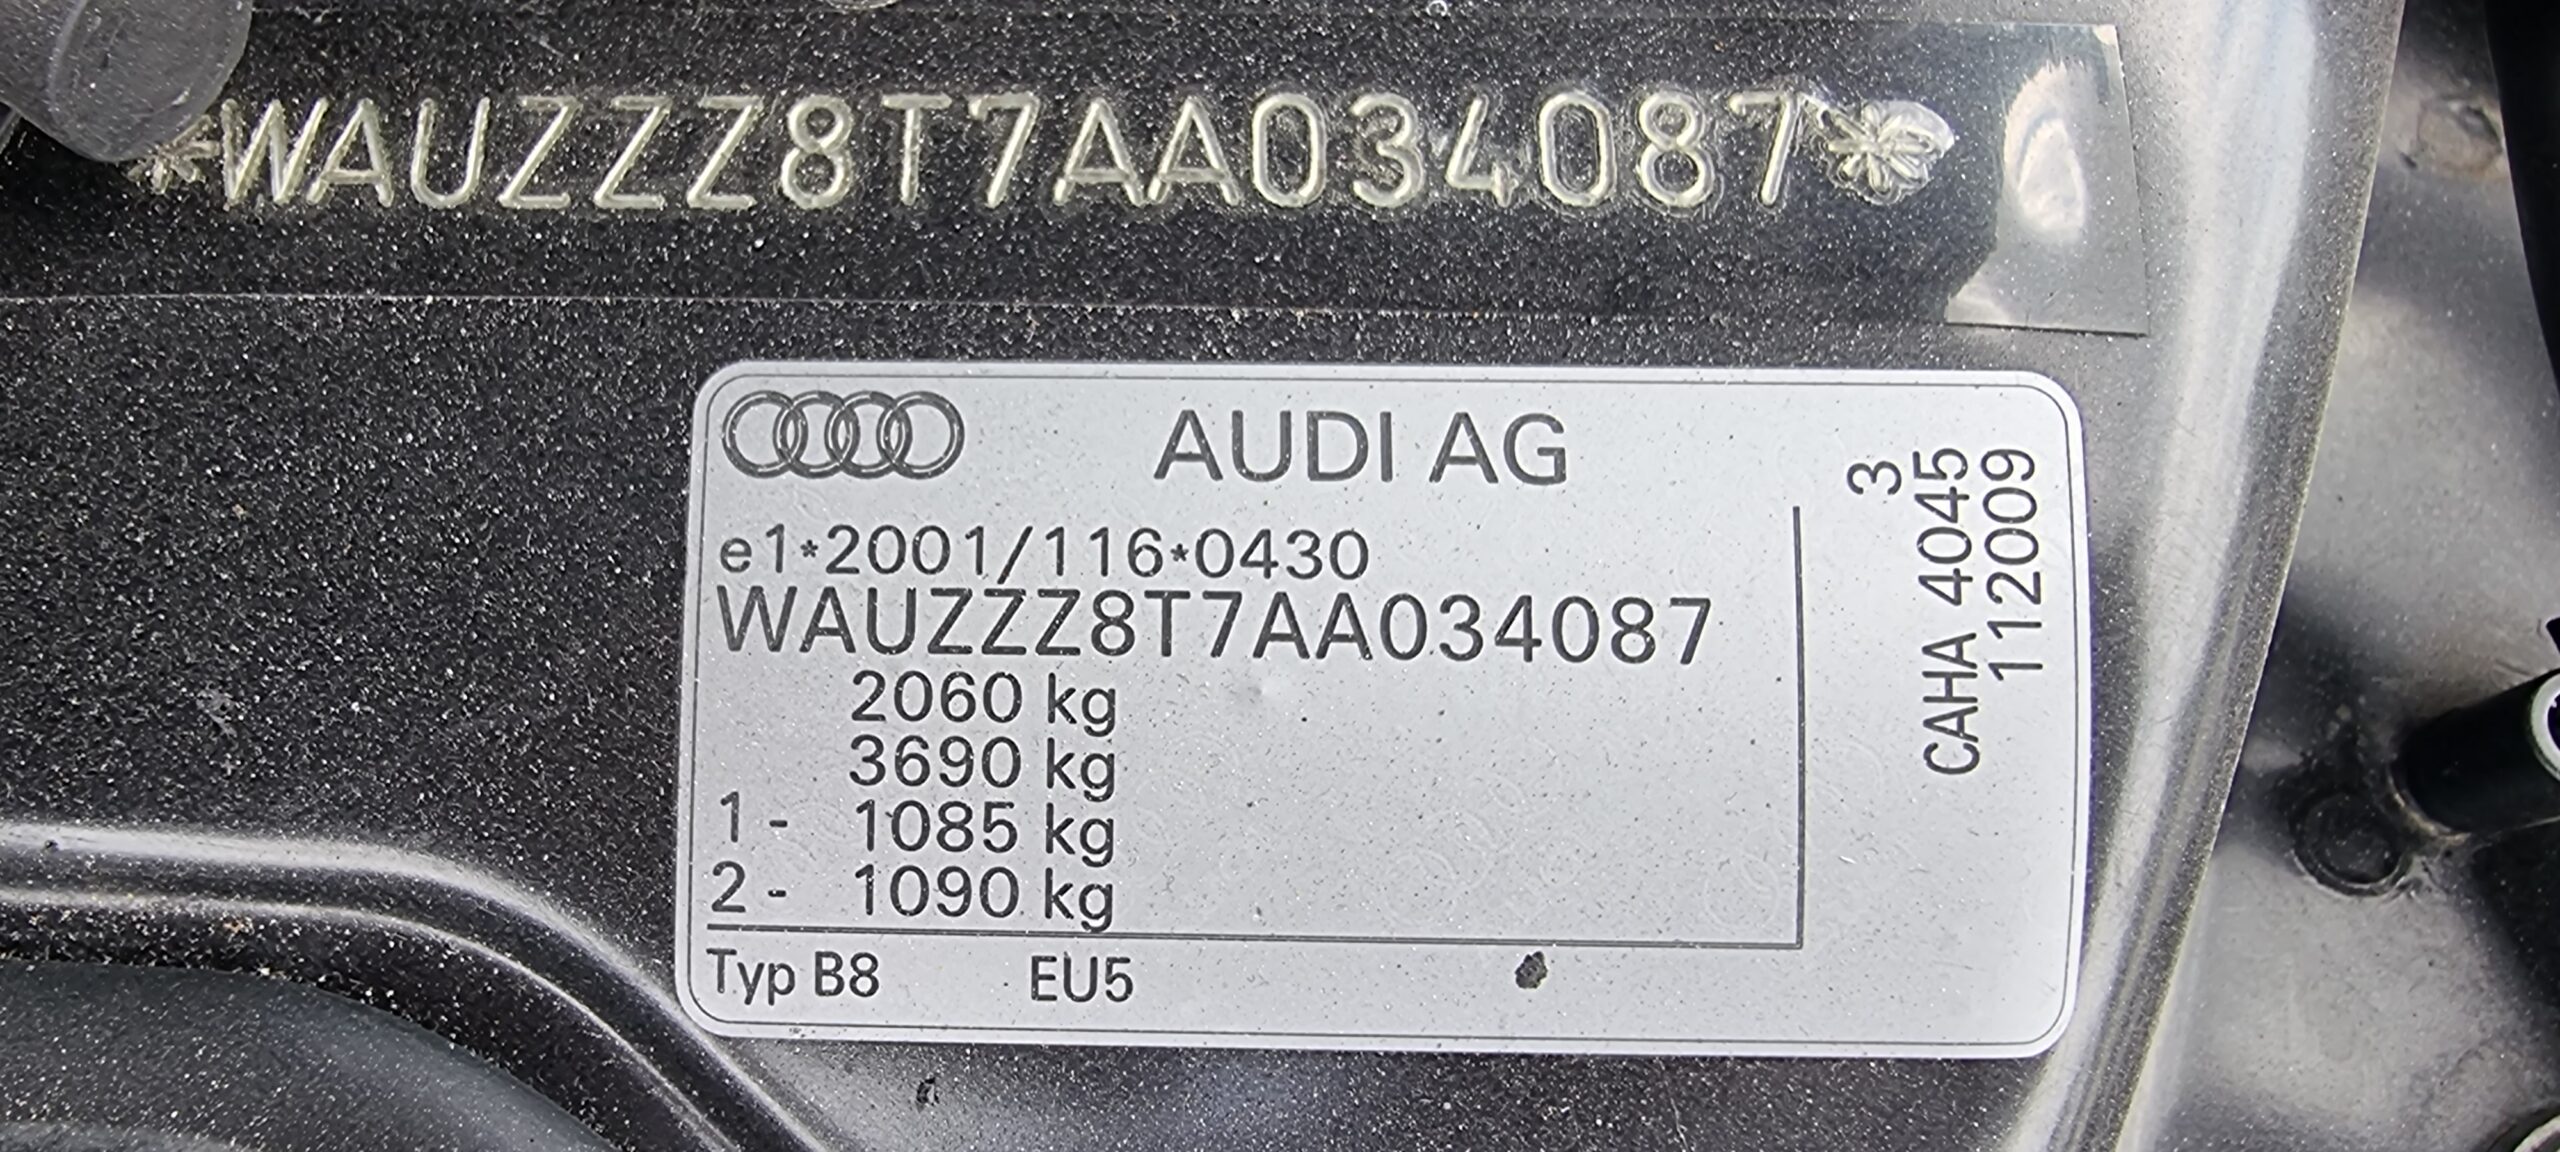 AUDI A5 S-LINE  2.0 TDI, 170 CP EURO 5